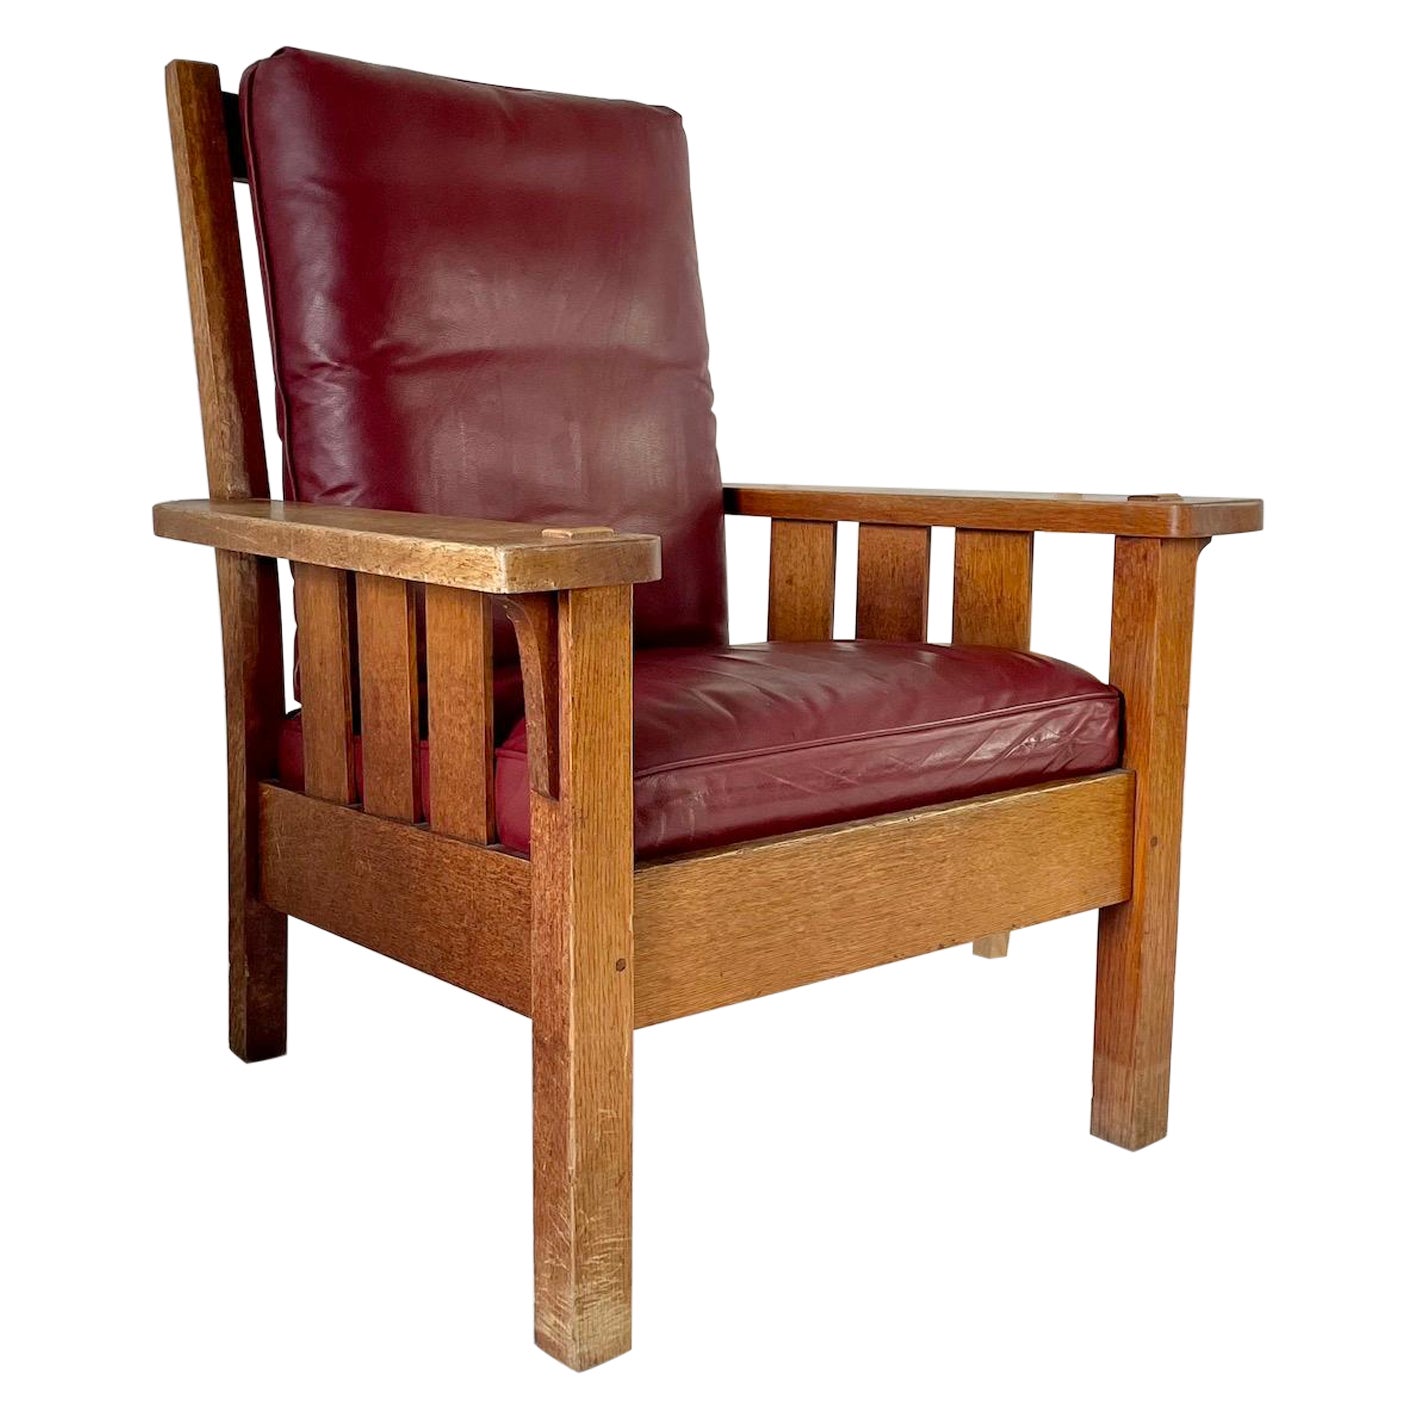 Amerikanischer Arts and Crafts-Sessel aus Eiche, Gustav Stickley zugeschrieben